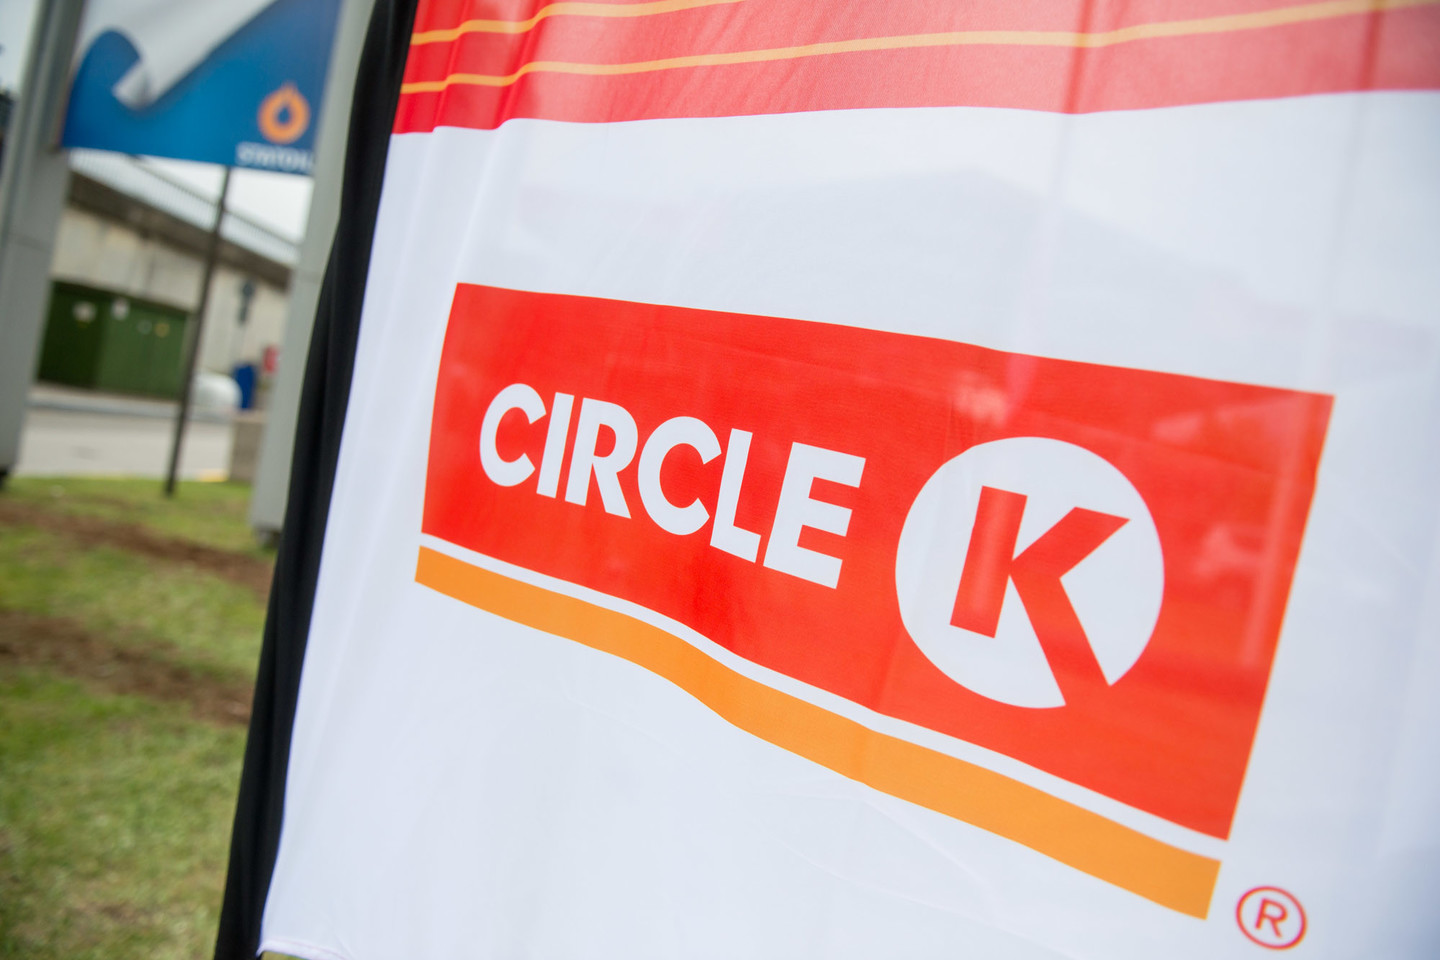  Vilniuje atidaryta pirmoji „Circle K“ degalinė.<br> J.Stacevičiaus nuotr. 